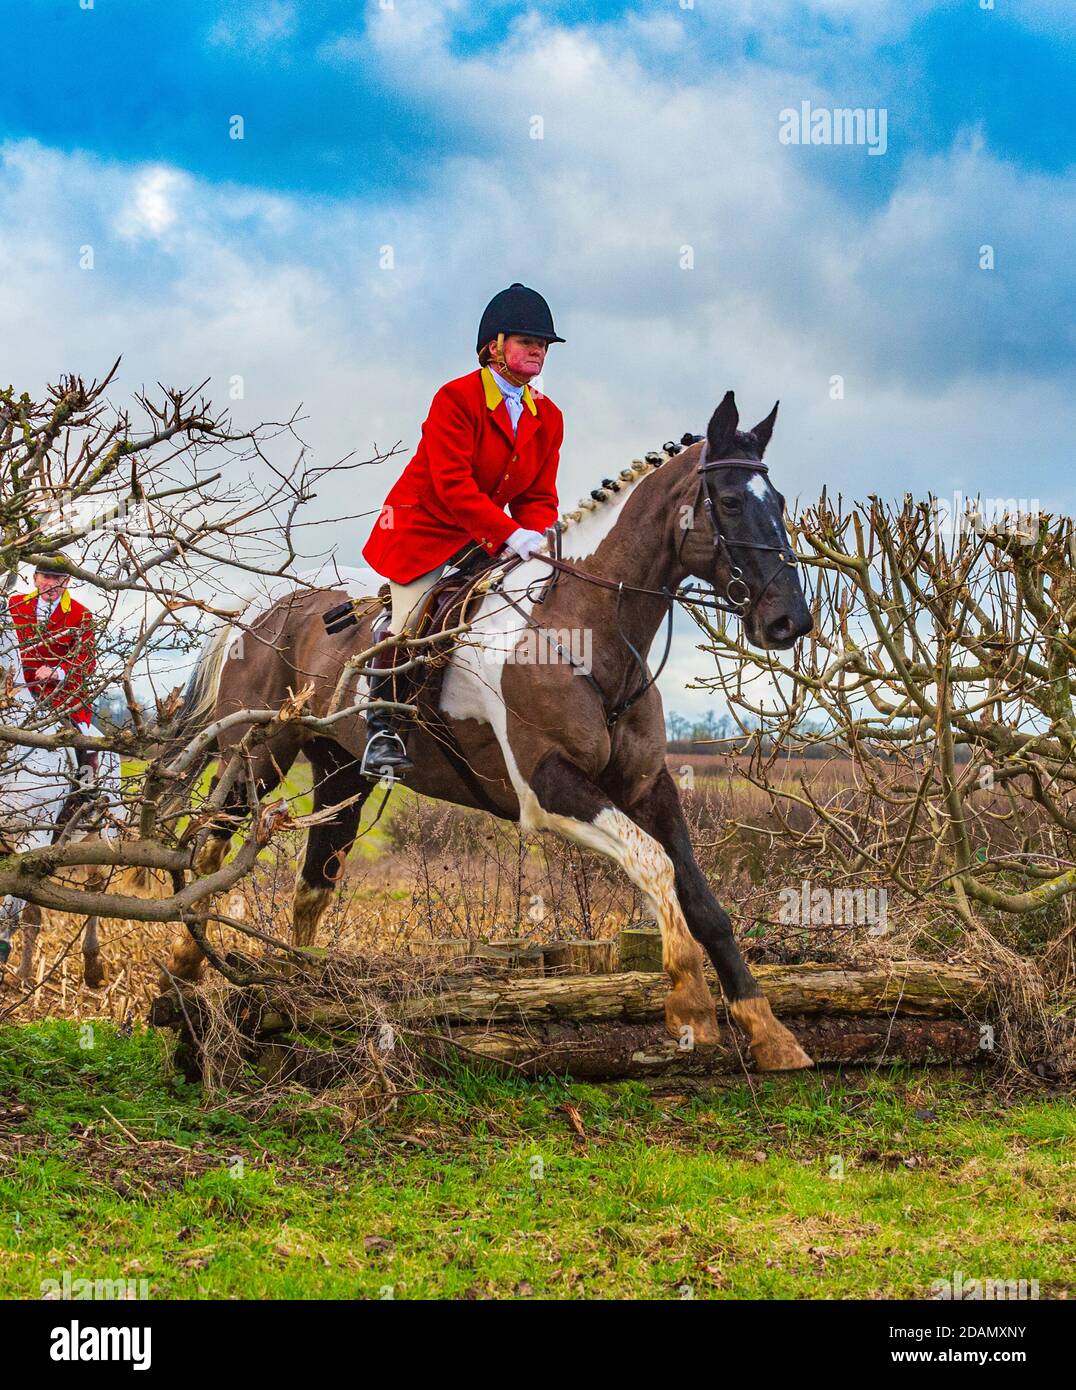 Cranwell Bloodhounds, Lincolnshire. Die Whipper in, eine Dame, jagen die Hunde springen über eine Hecke in voller Jagd Outfit mit einer roten Jacke gekleidet Stockfoto